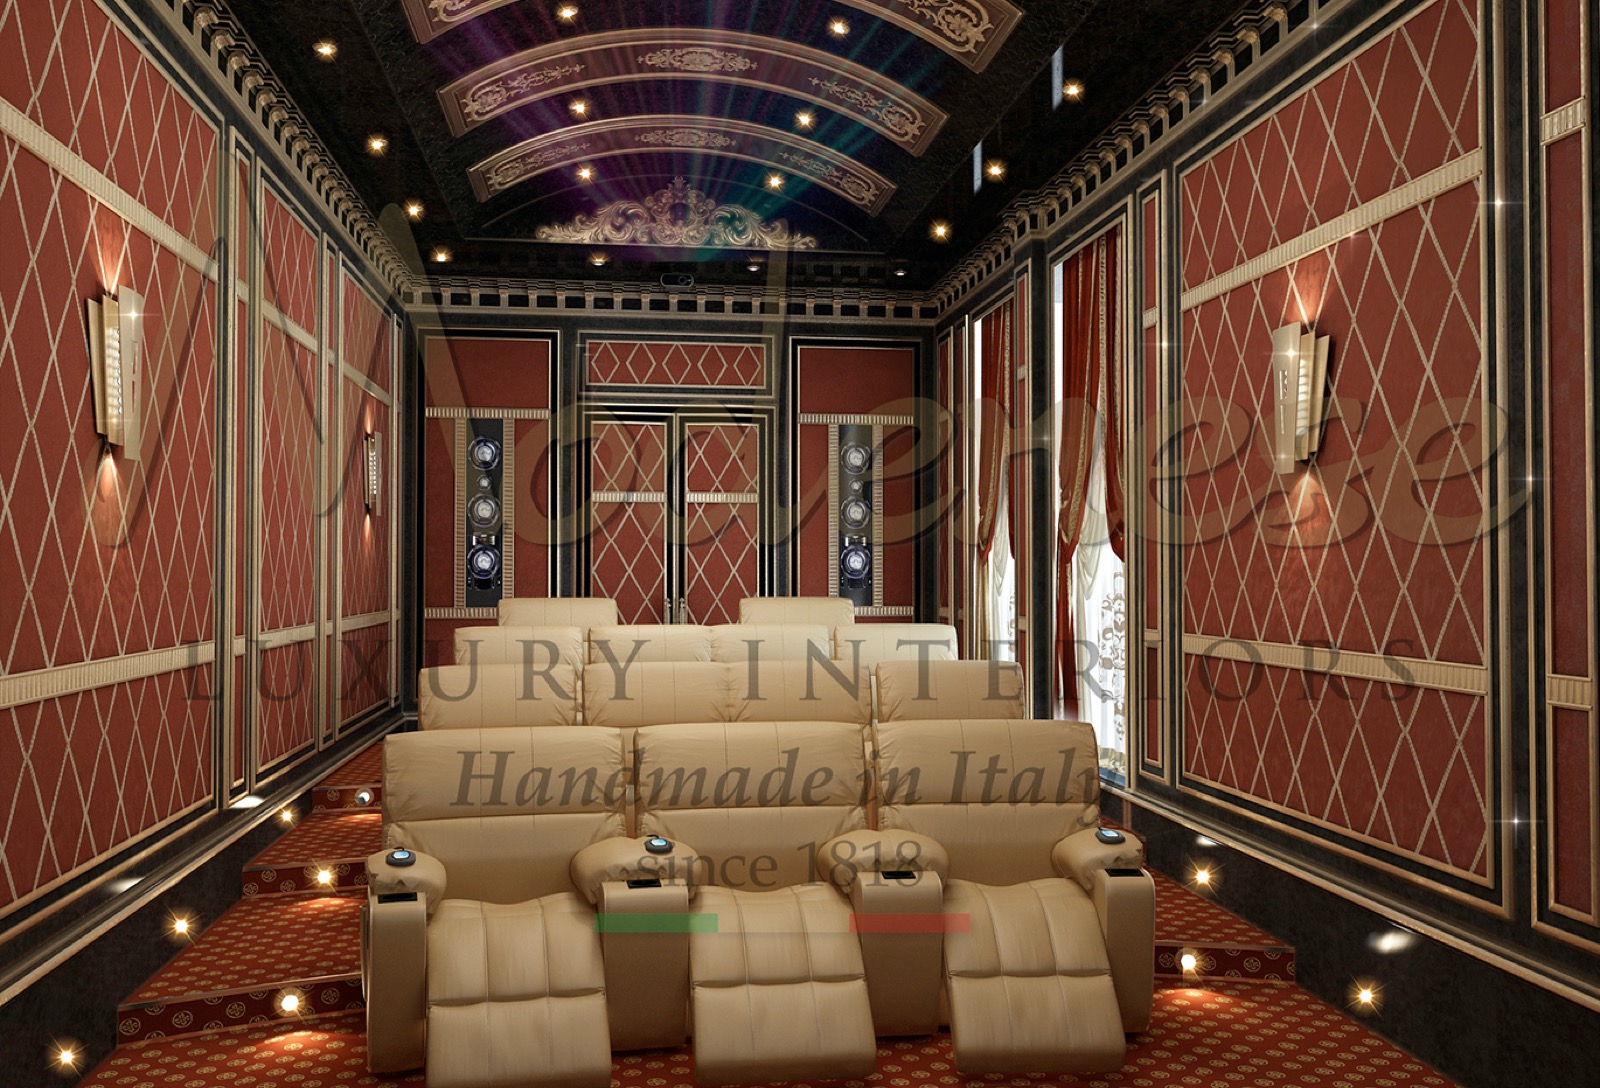 salle de cinéma décoration d'intérieur de luxe tapisserie personnalisée canapés fauteuils divertissement ameublement sur mesure fabriqué en Italie mobilier classique baroque style décoration d'intérieur